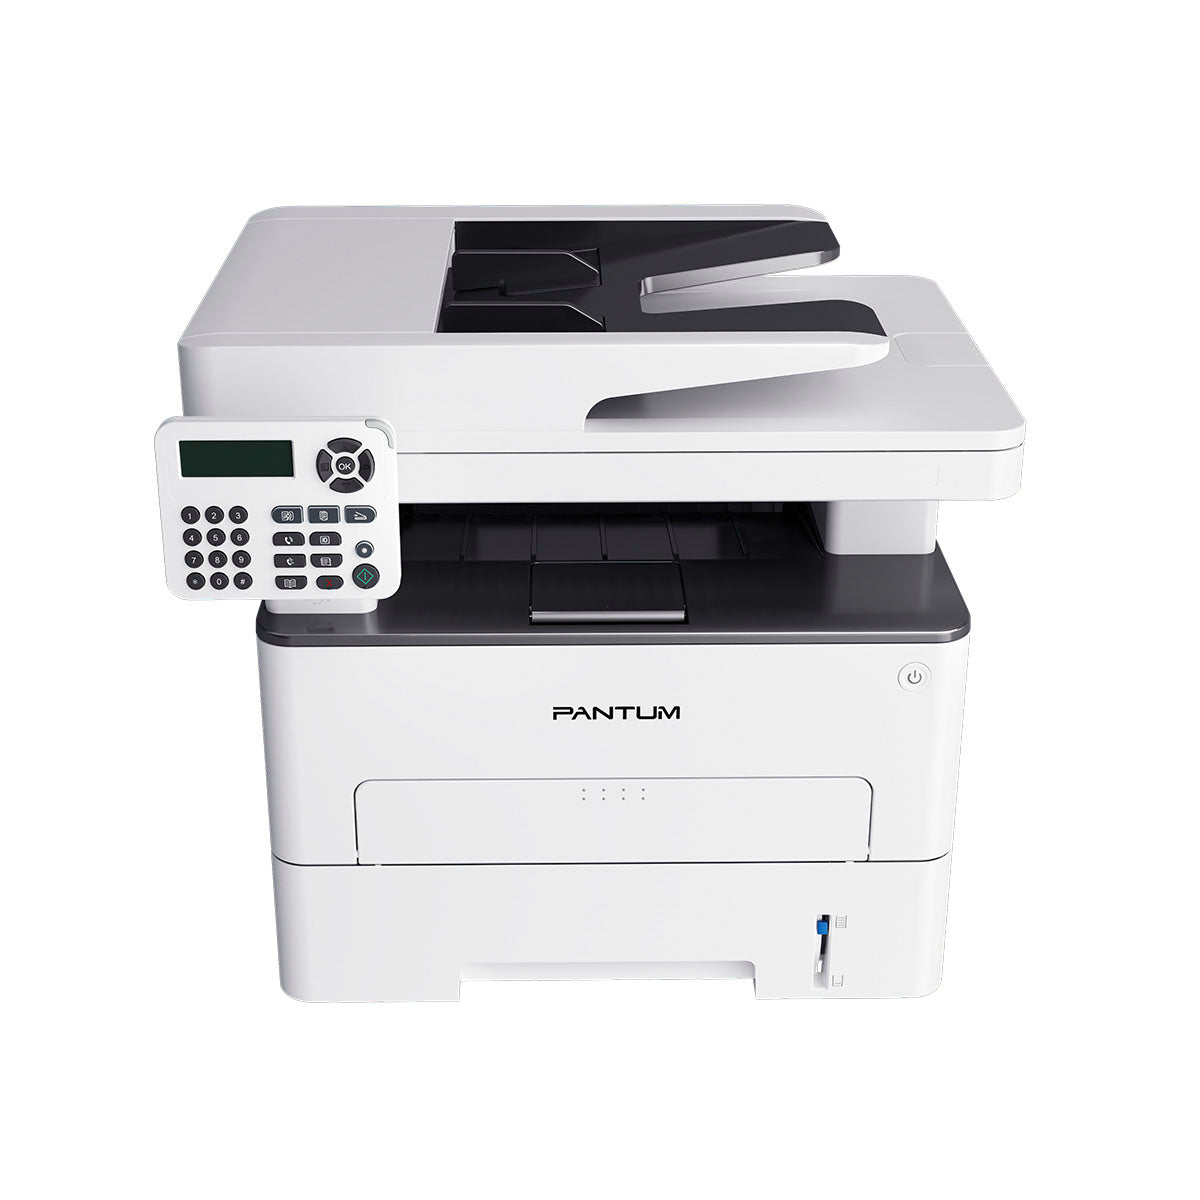 Pantum M7100DW A4 3-in-1 Mono Laser Printer